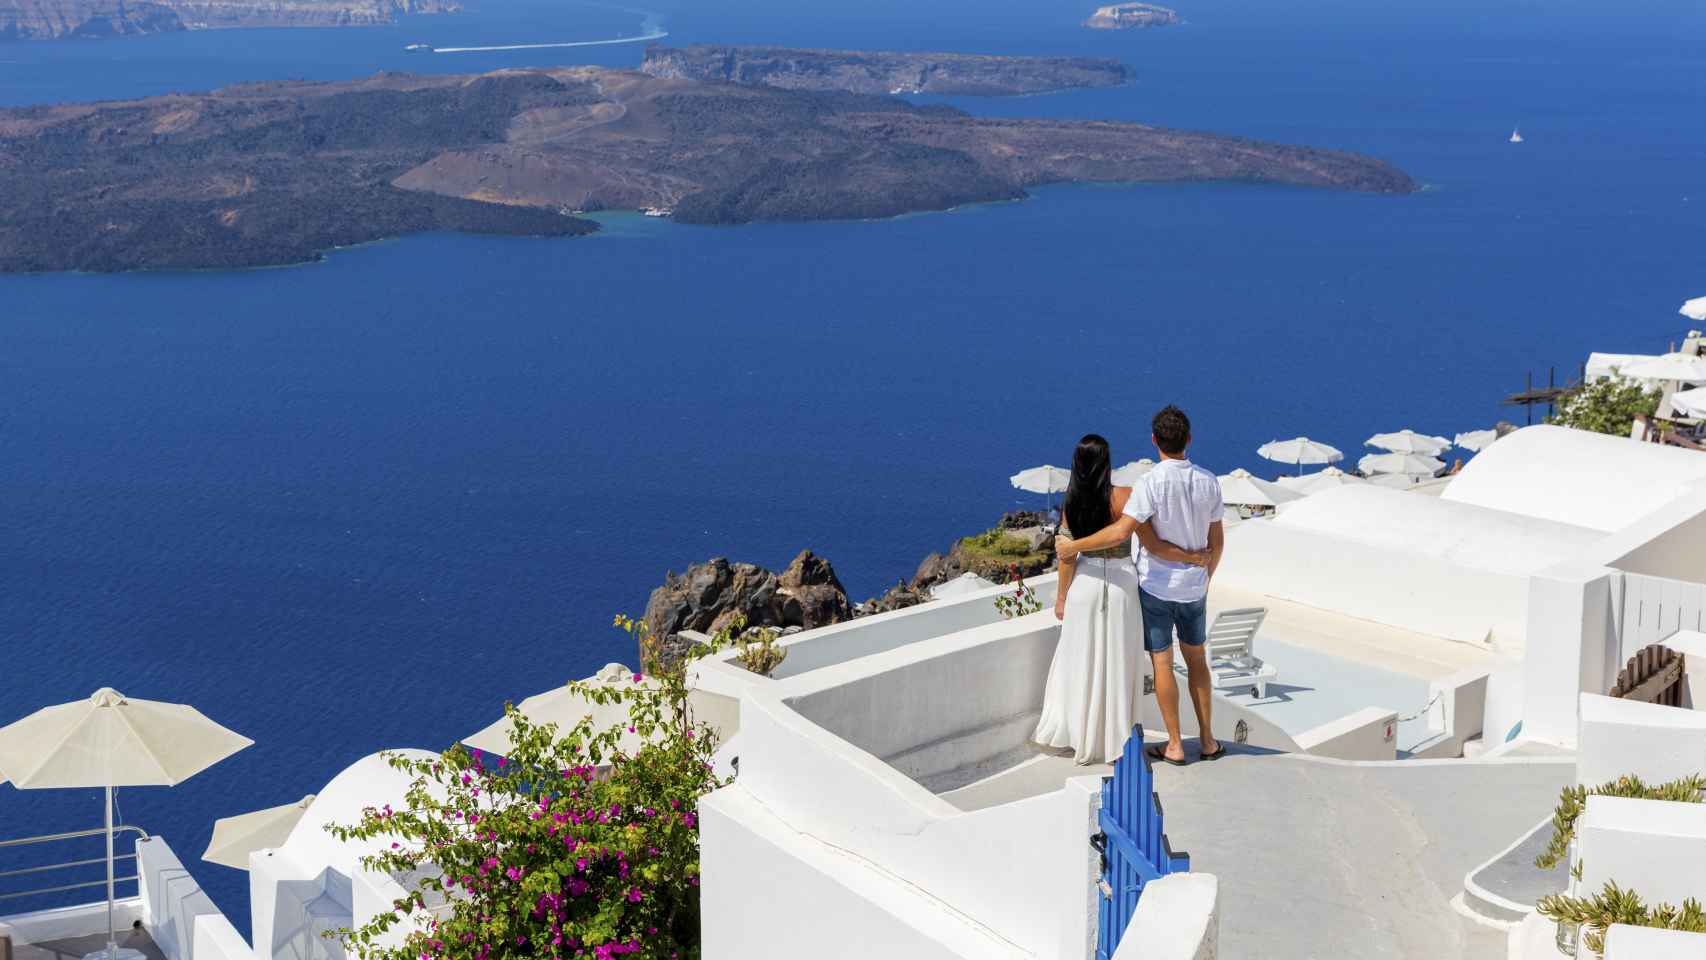 Una pareja joven disfruta de las vistas desde una villa en Santorini.